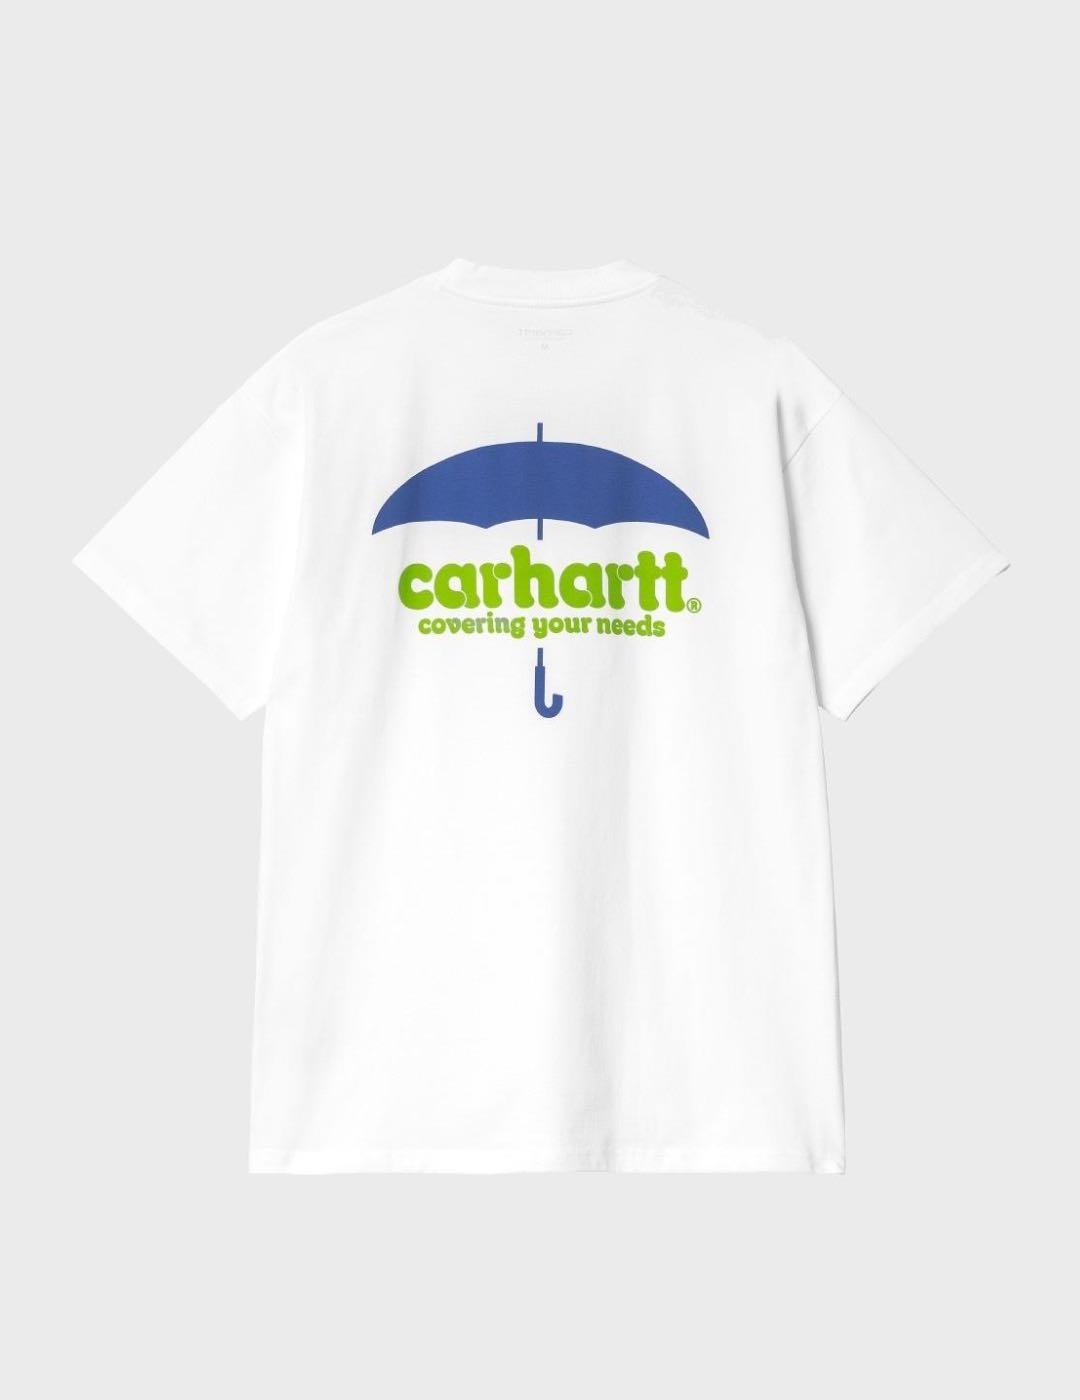 Camiseta Carhartt WIP S/S Covers White